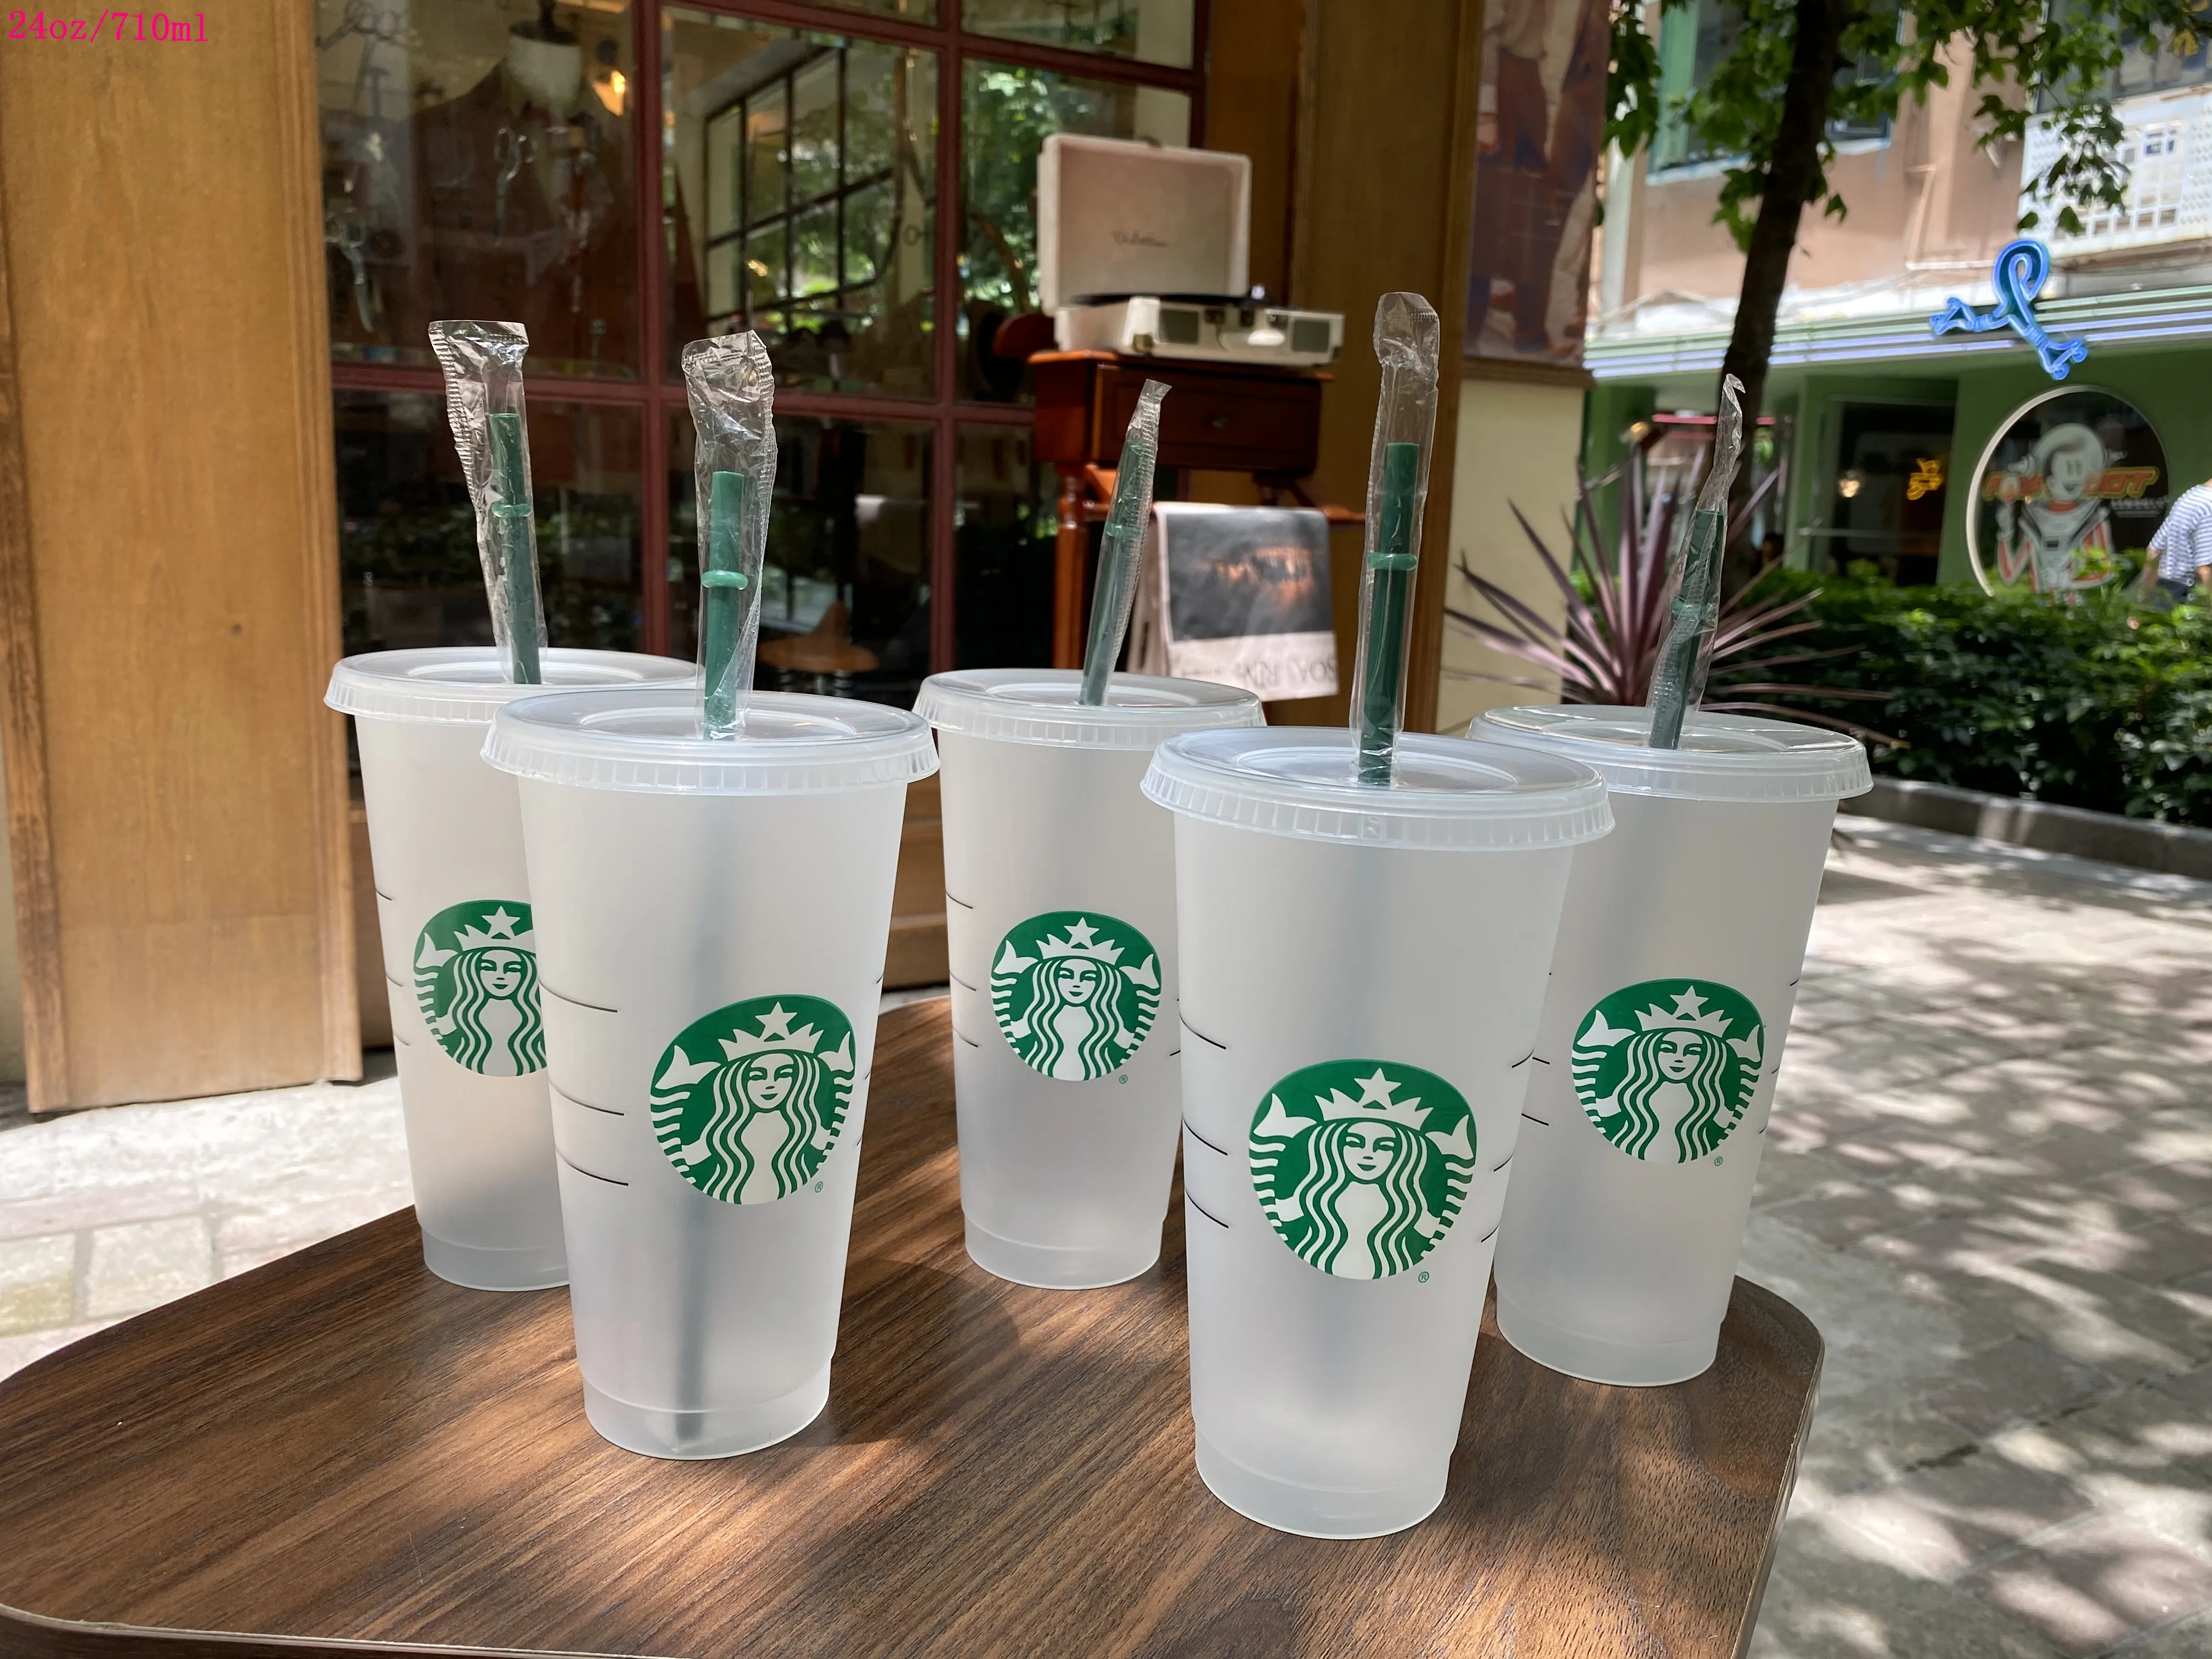 Starbucks Mermaid Goddess 16 унций 24 унции пластиковые кружки Тамблер многоразовый прозрачный питье с плоским дном.